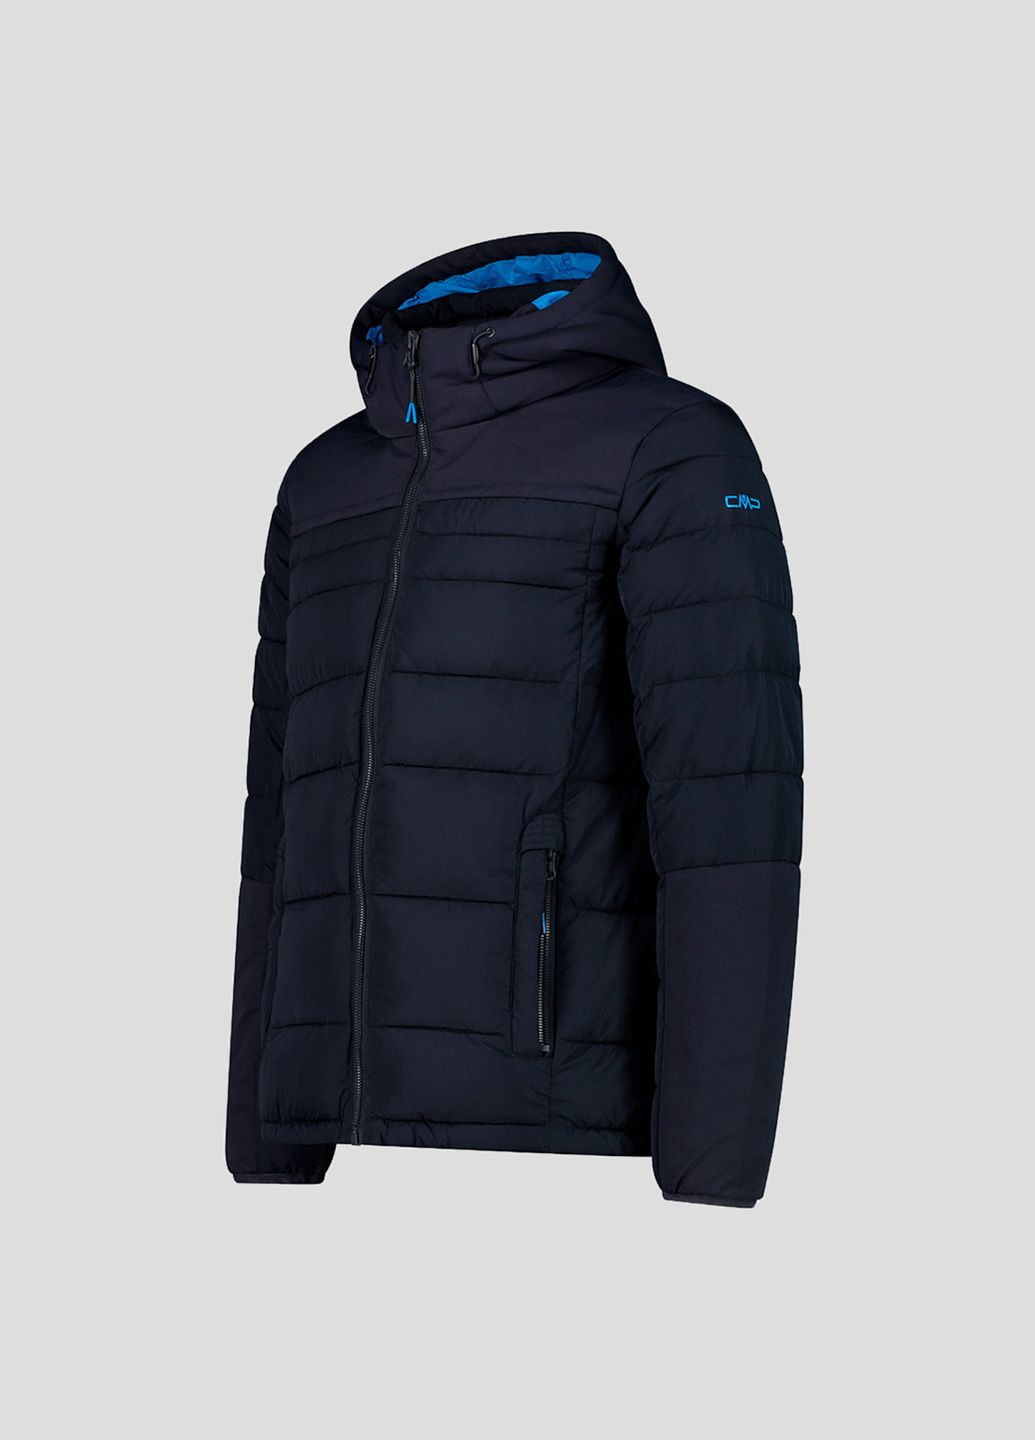 Темно-синяя зимняя мужская темно-синяя куртка на синтепоне man jacket fix hood CMP